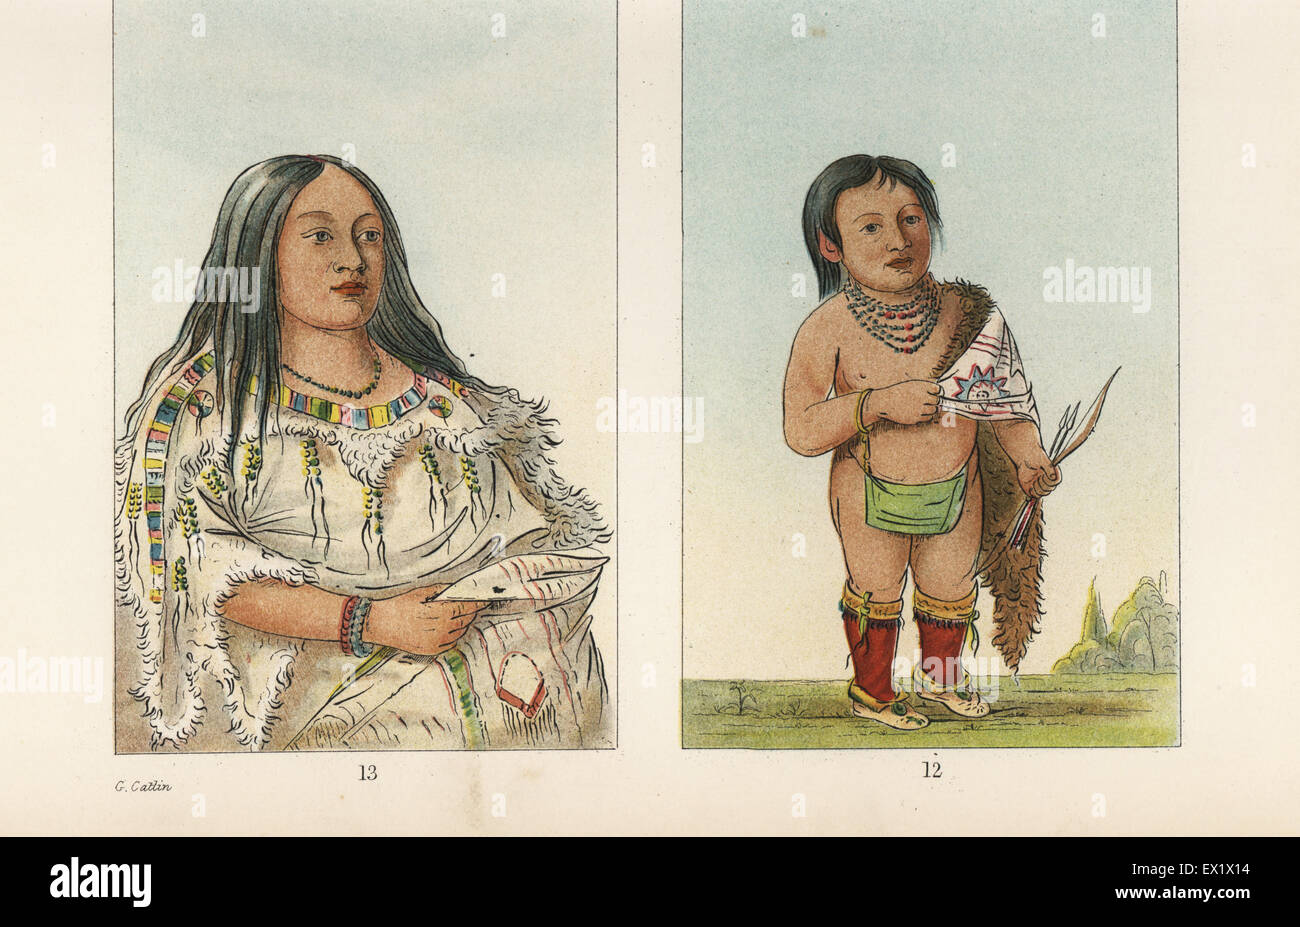 Eeh-nis-kim, Cristallo Pietra, squaw o moglie di Stu-mick-o-aspira, Capo Testa del Blackfoot nazione, e loro nipote di raccoon tunica di pelle. Foto Stock